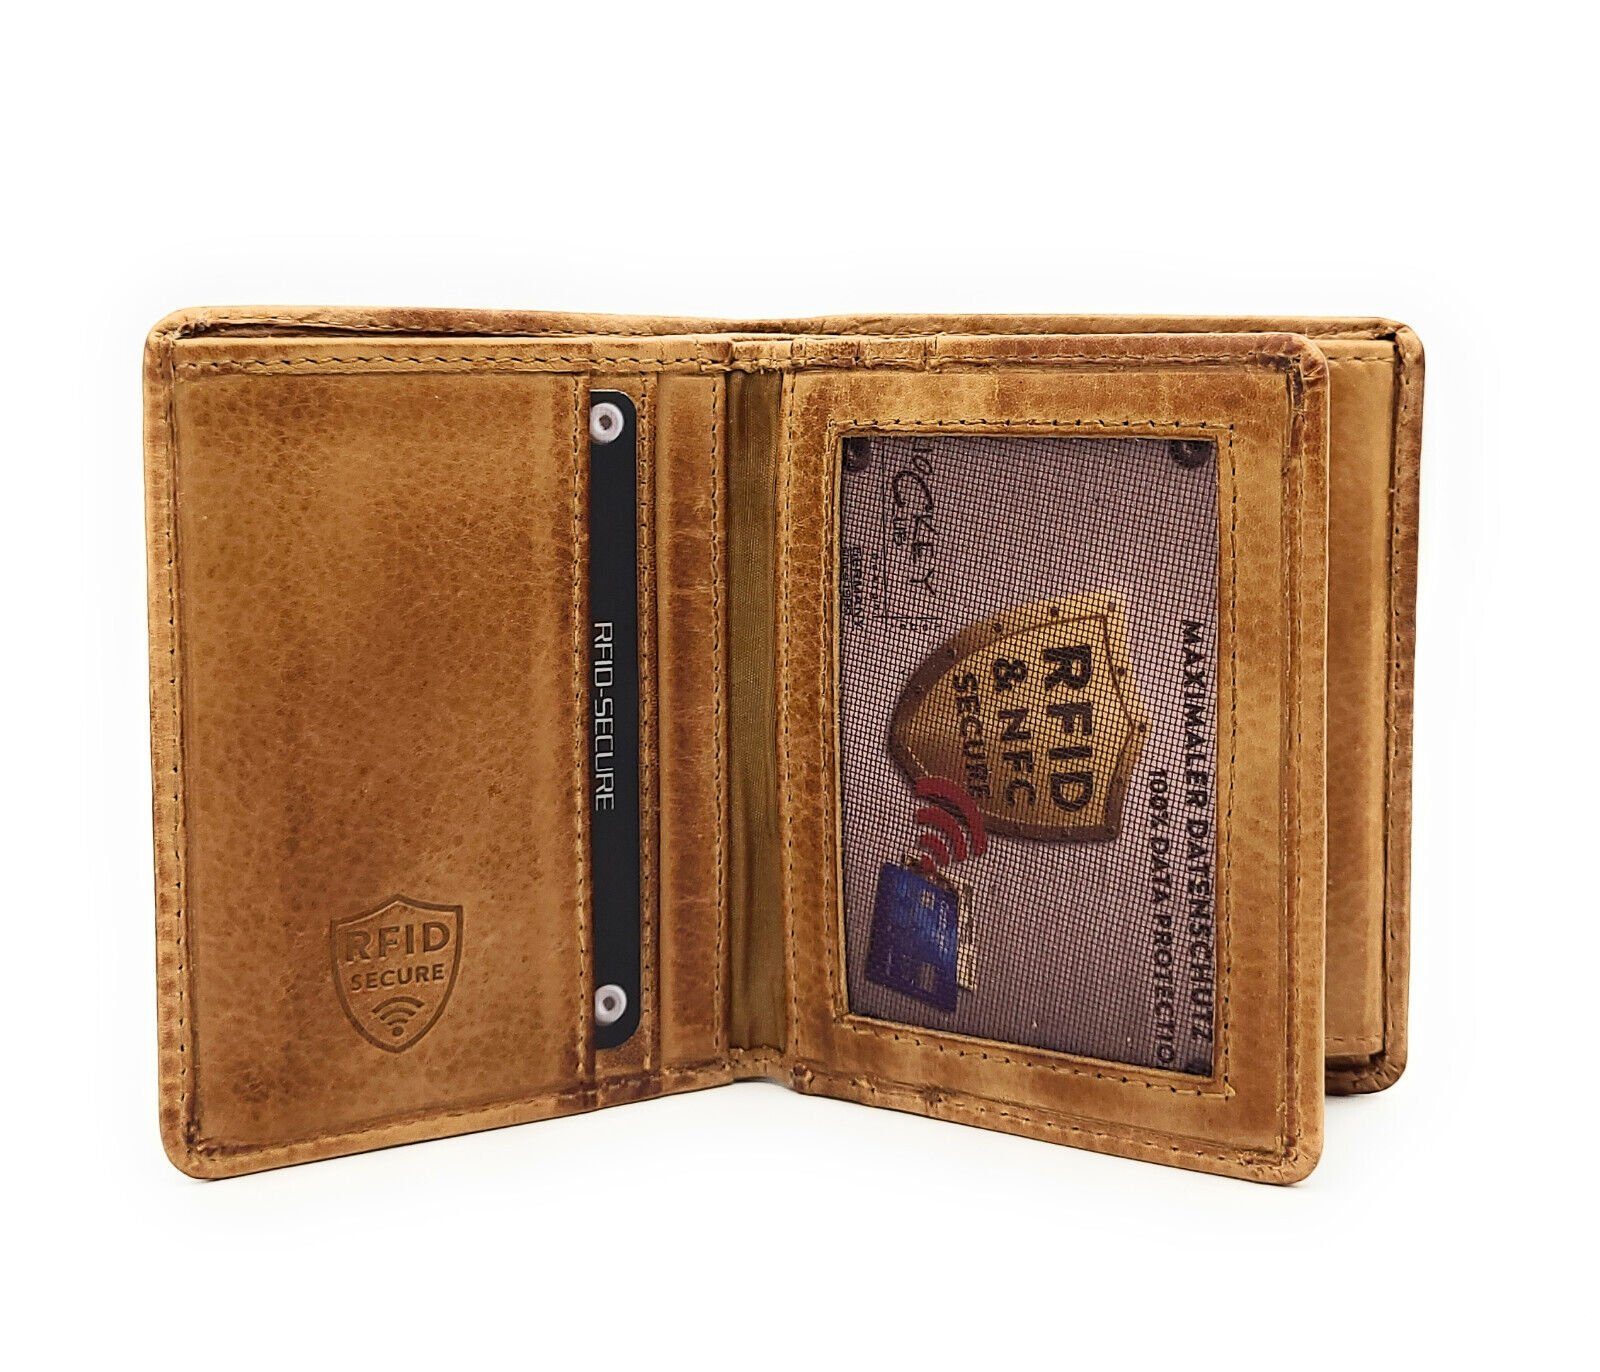 CLUB Rindleder gewachstes echt vintage Schutz mit braun, Mini Portemonnaie RFID Geldbörse Leder JOCKEY